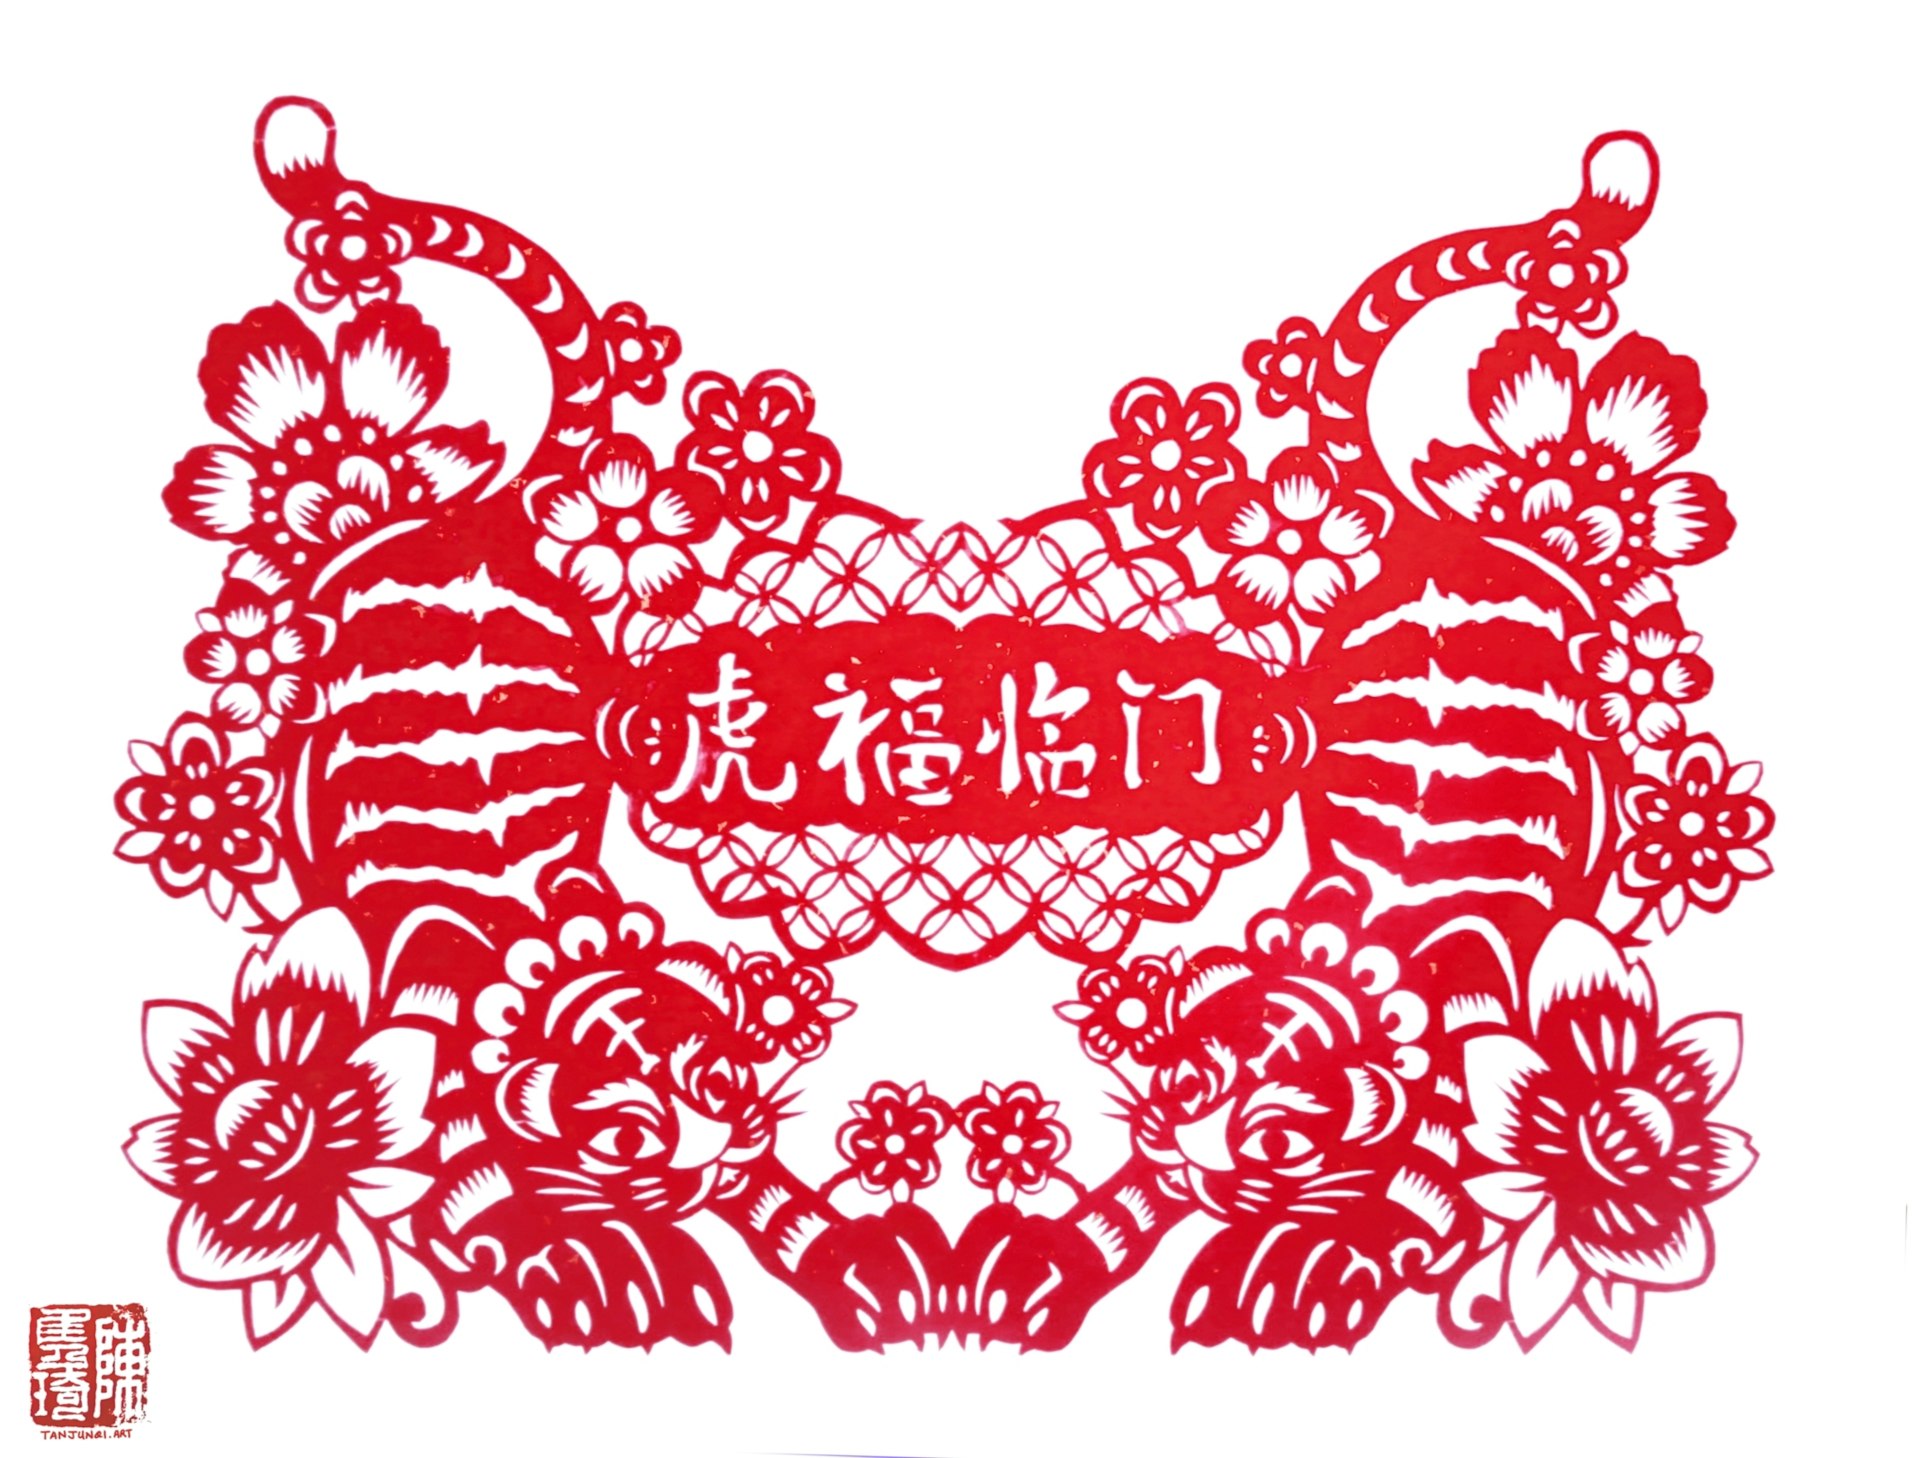 对称的剪纸，描绘着花丛中的两只卧虎。中间写着「虎福临门」四个字